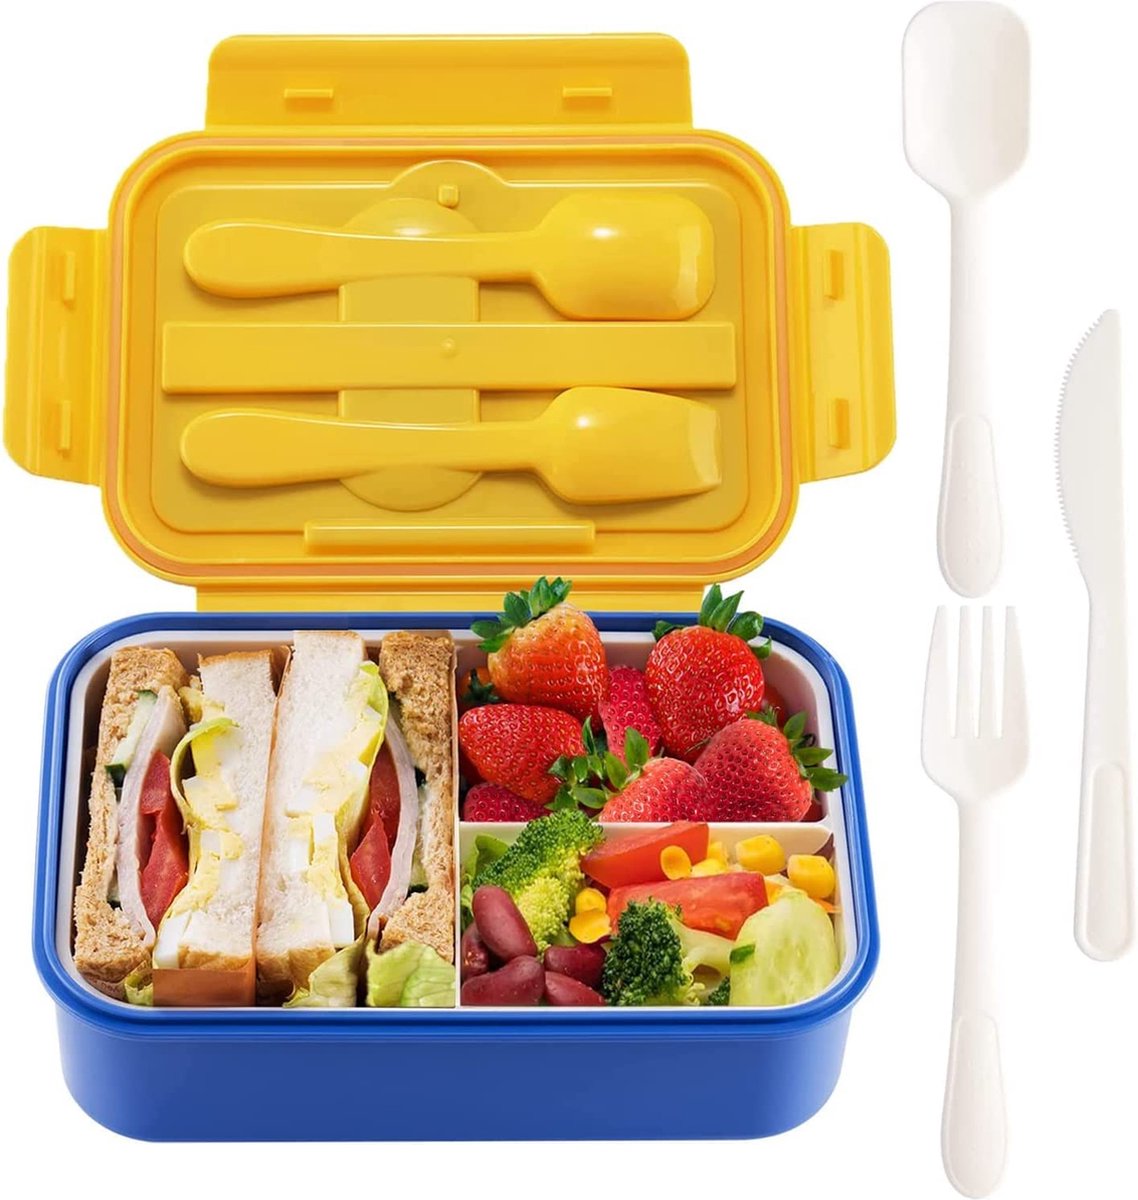 TOPSAL Lunchbox voor volwassenen/kinderen met onderverdeling, BPA-vrije bento box voor school / kantoor / picknick reizen, pak voor magnetron verwarming en vaatwasser (blauw)